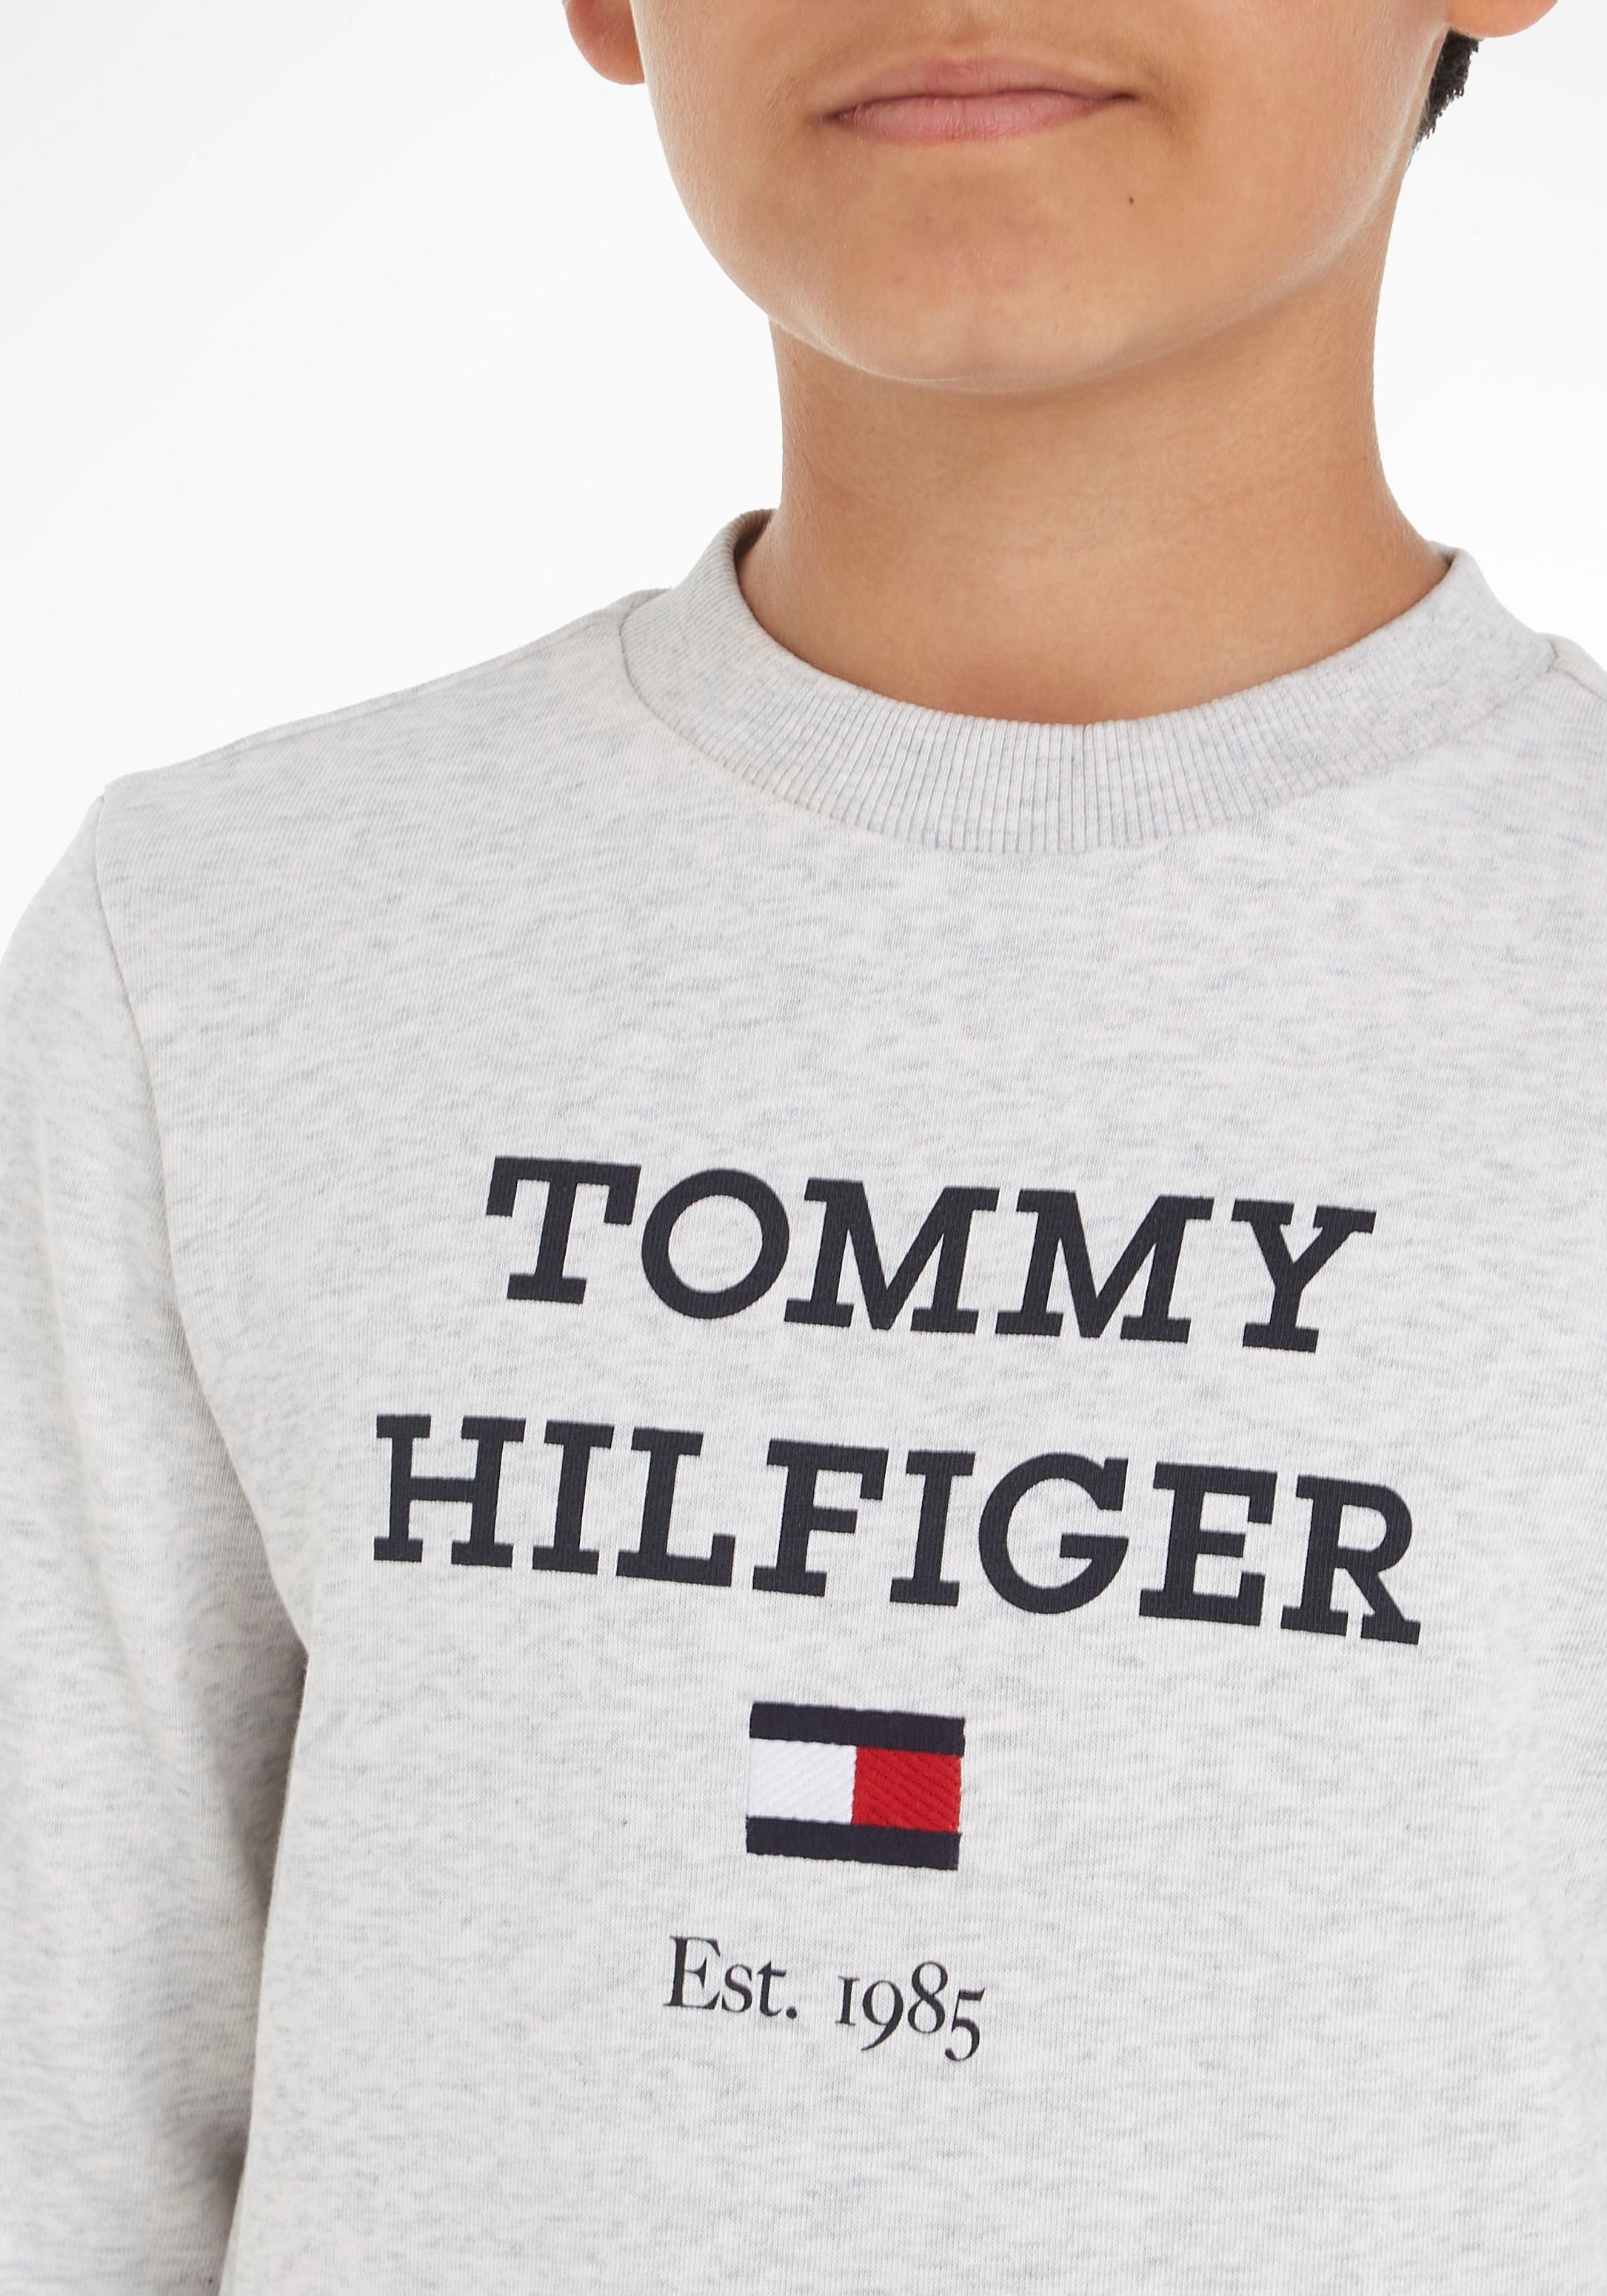 Trendige Tommy Sweatshirt SWEATSHIRT«, grossem »TH Mindestbestellwert ohne kaufen Logo mit Hilfiger LOGO